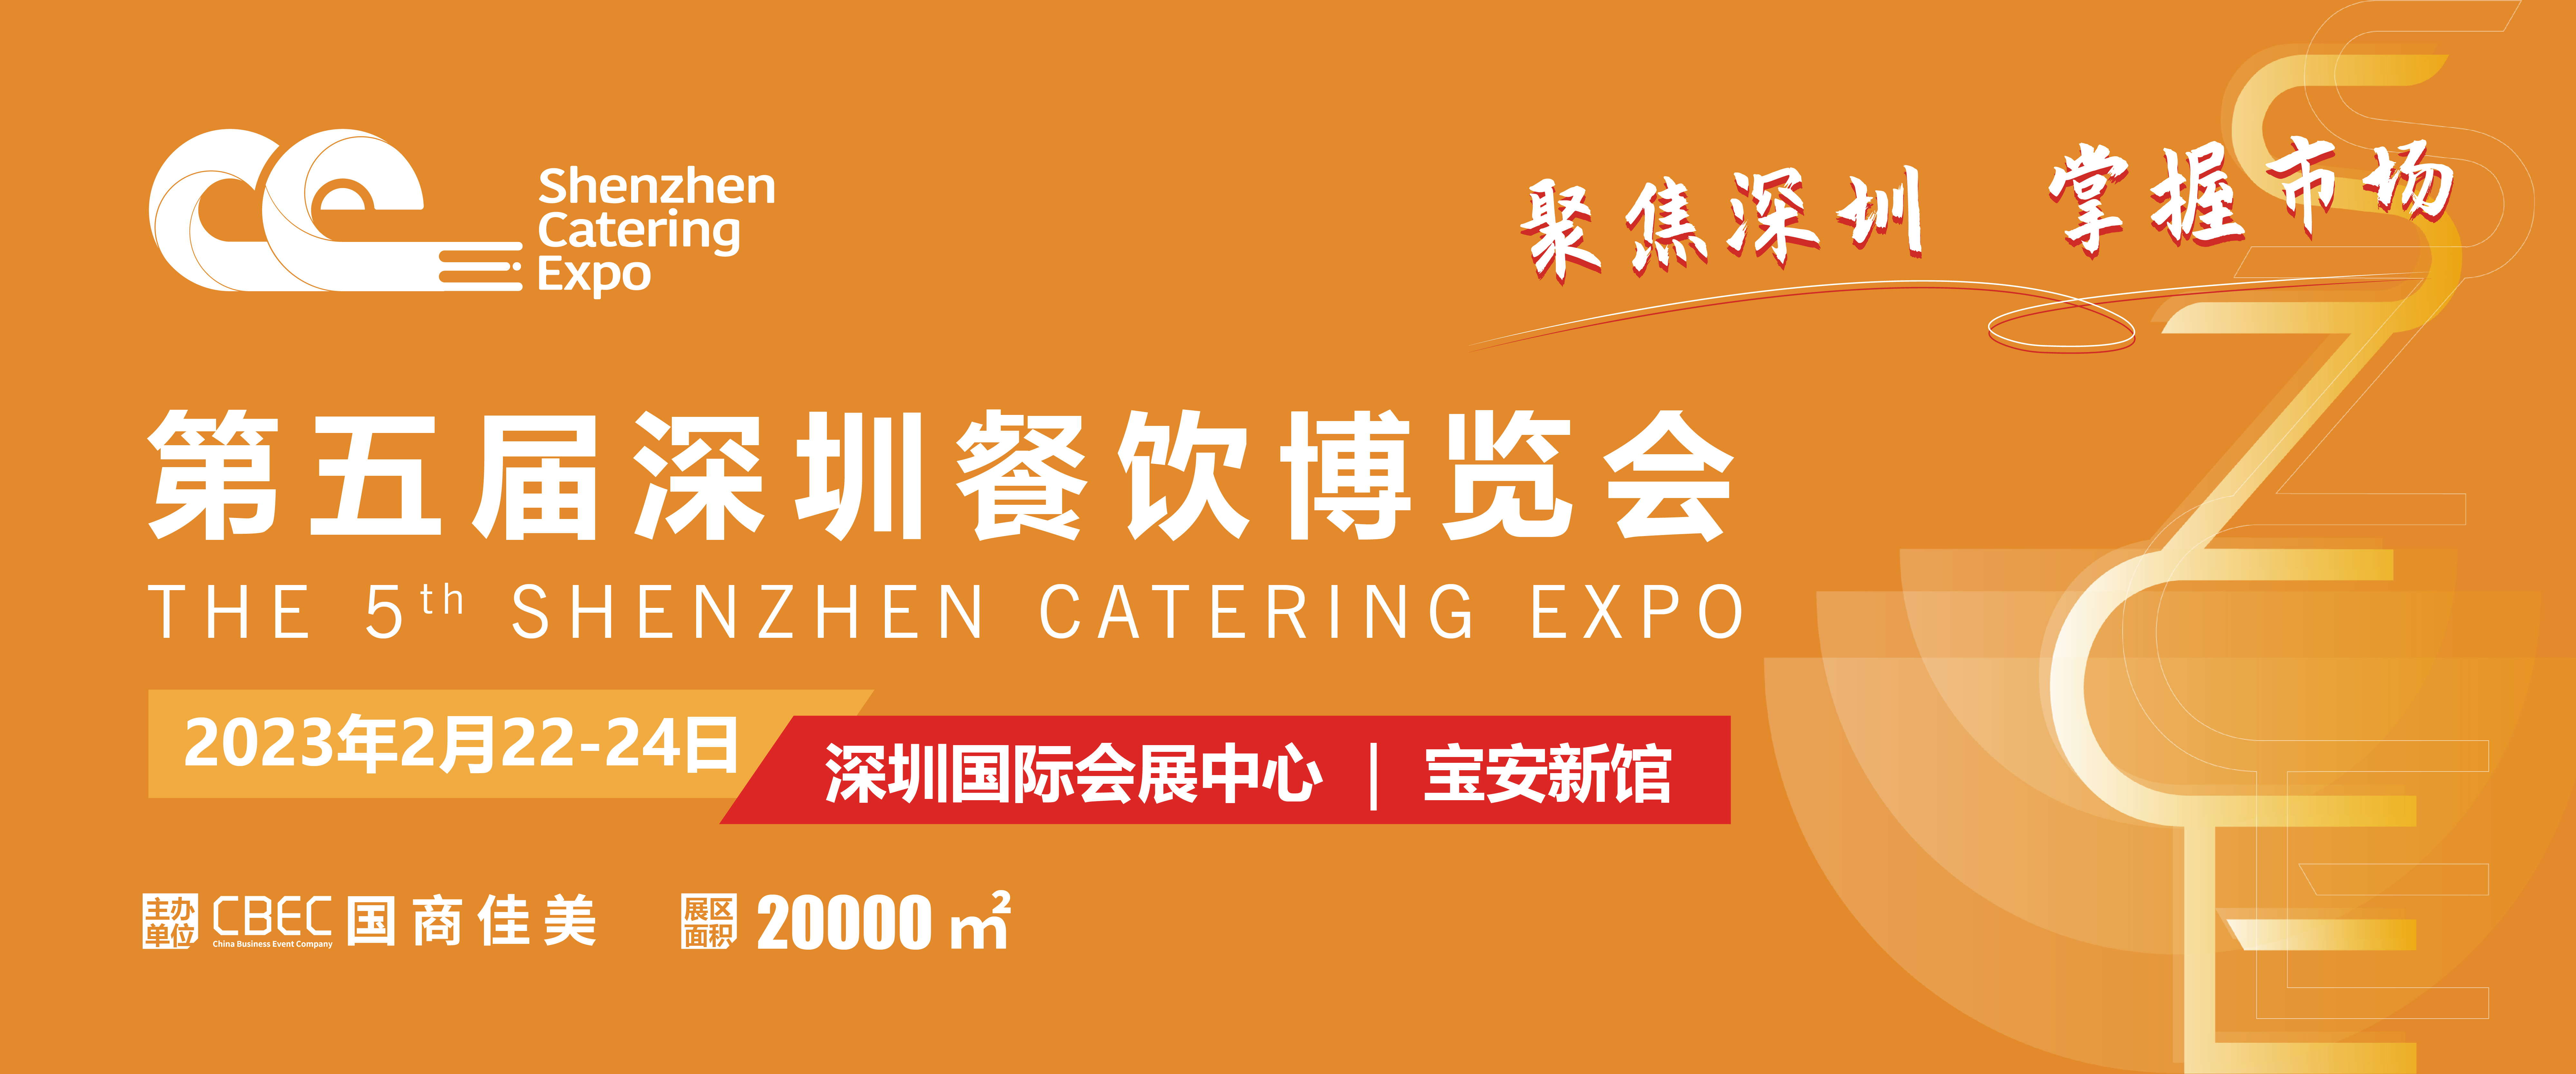 深圳餐饮博览会